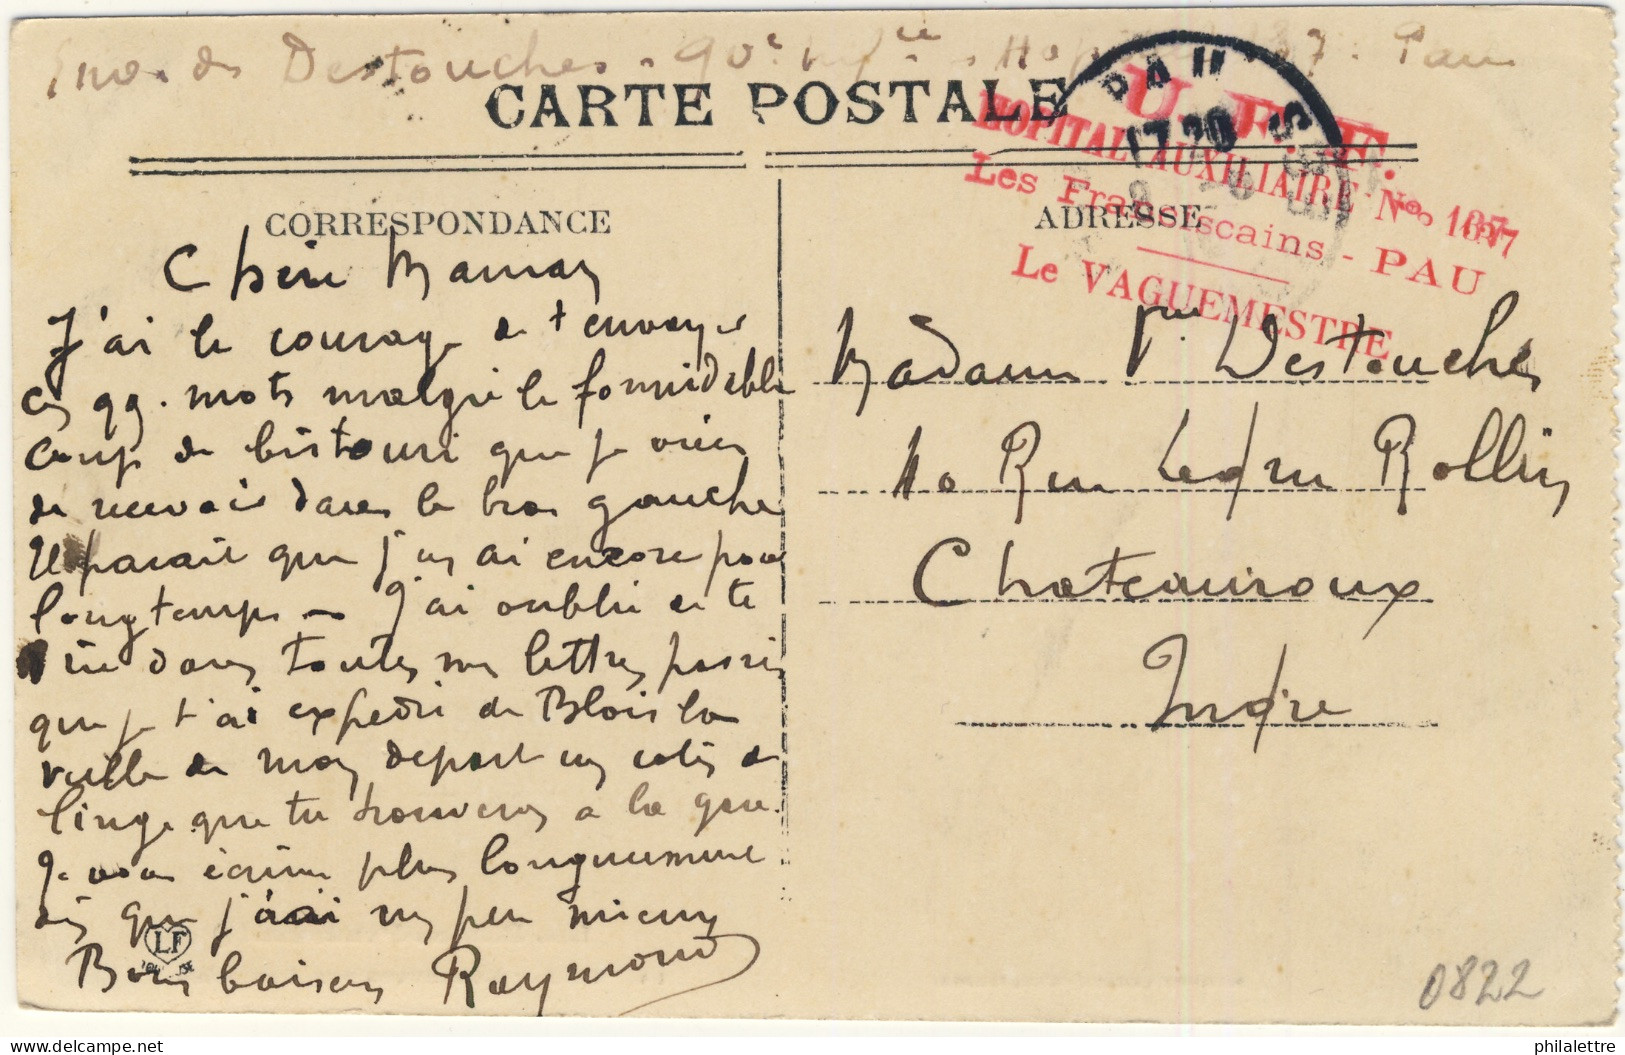 FRANCE - 191? - Cachet De L'Hôpital Auxiliaire N°137 "Les Franciscains" De PAU Sur CPA Pour Châteauroux, Indre - 1. Weltkrieg 1914-1918